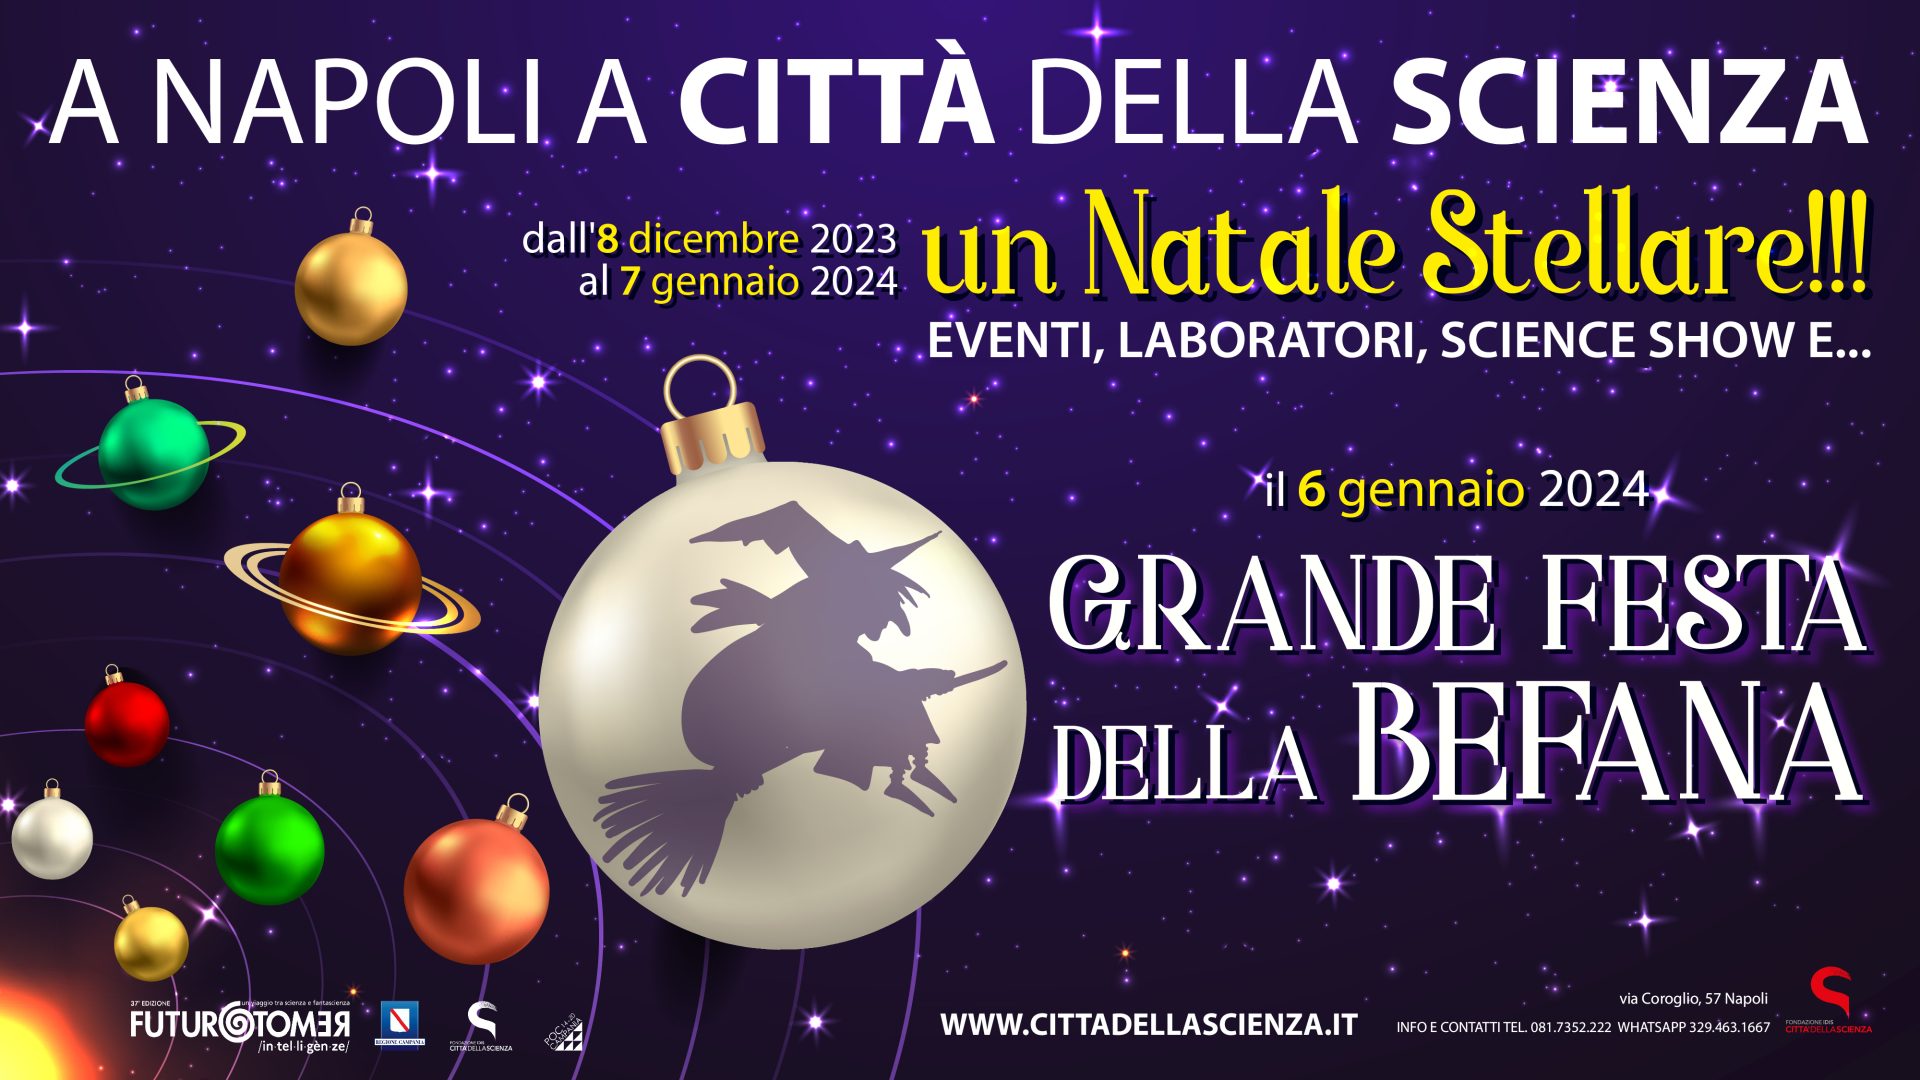 A Napoli a Città della Scienza la Grande Festa della Befana 2024